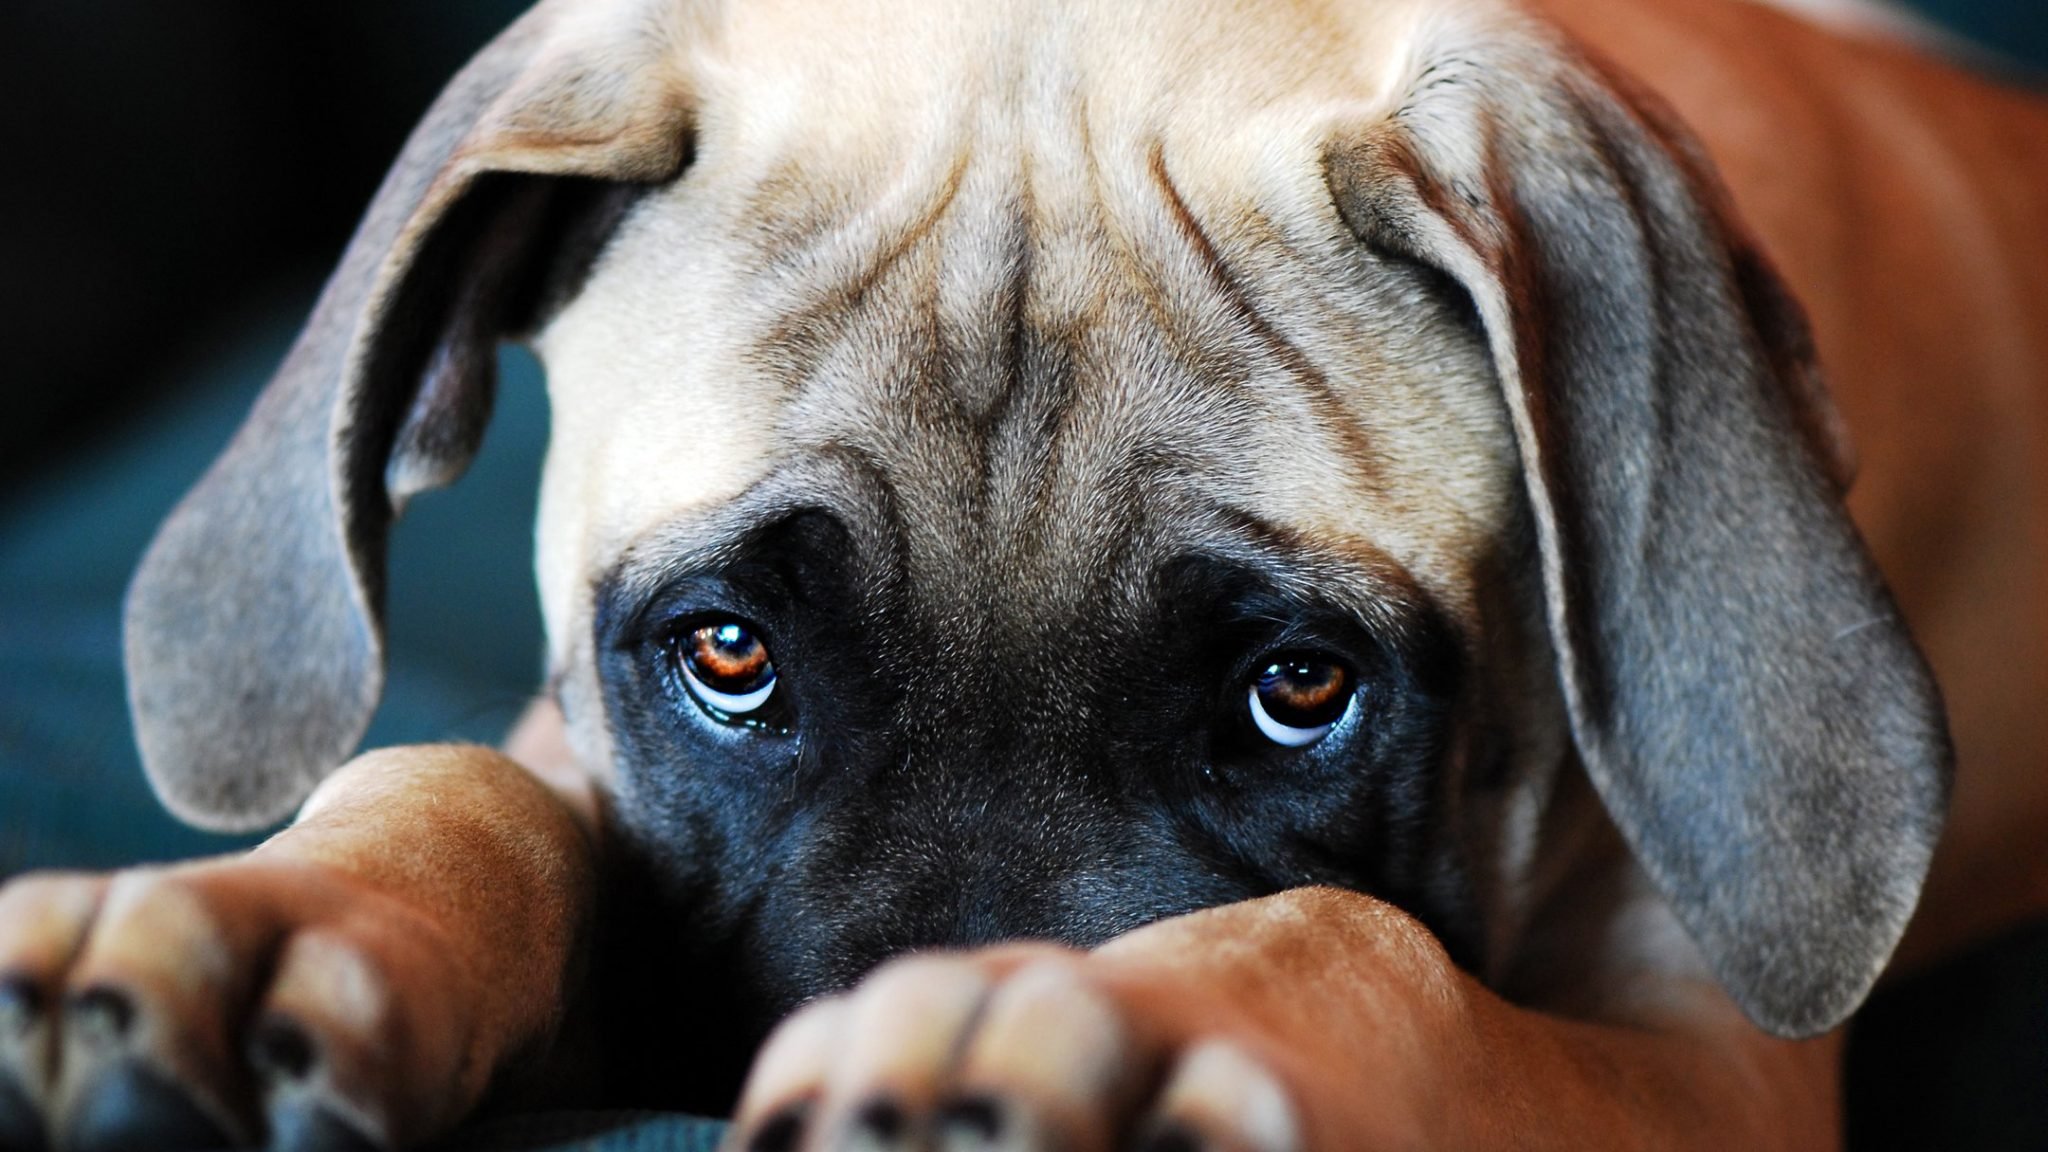 üzgün görünen uzun kulaklı masum bakışlı köpek